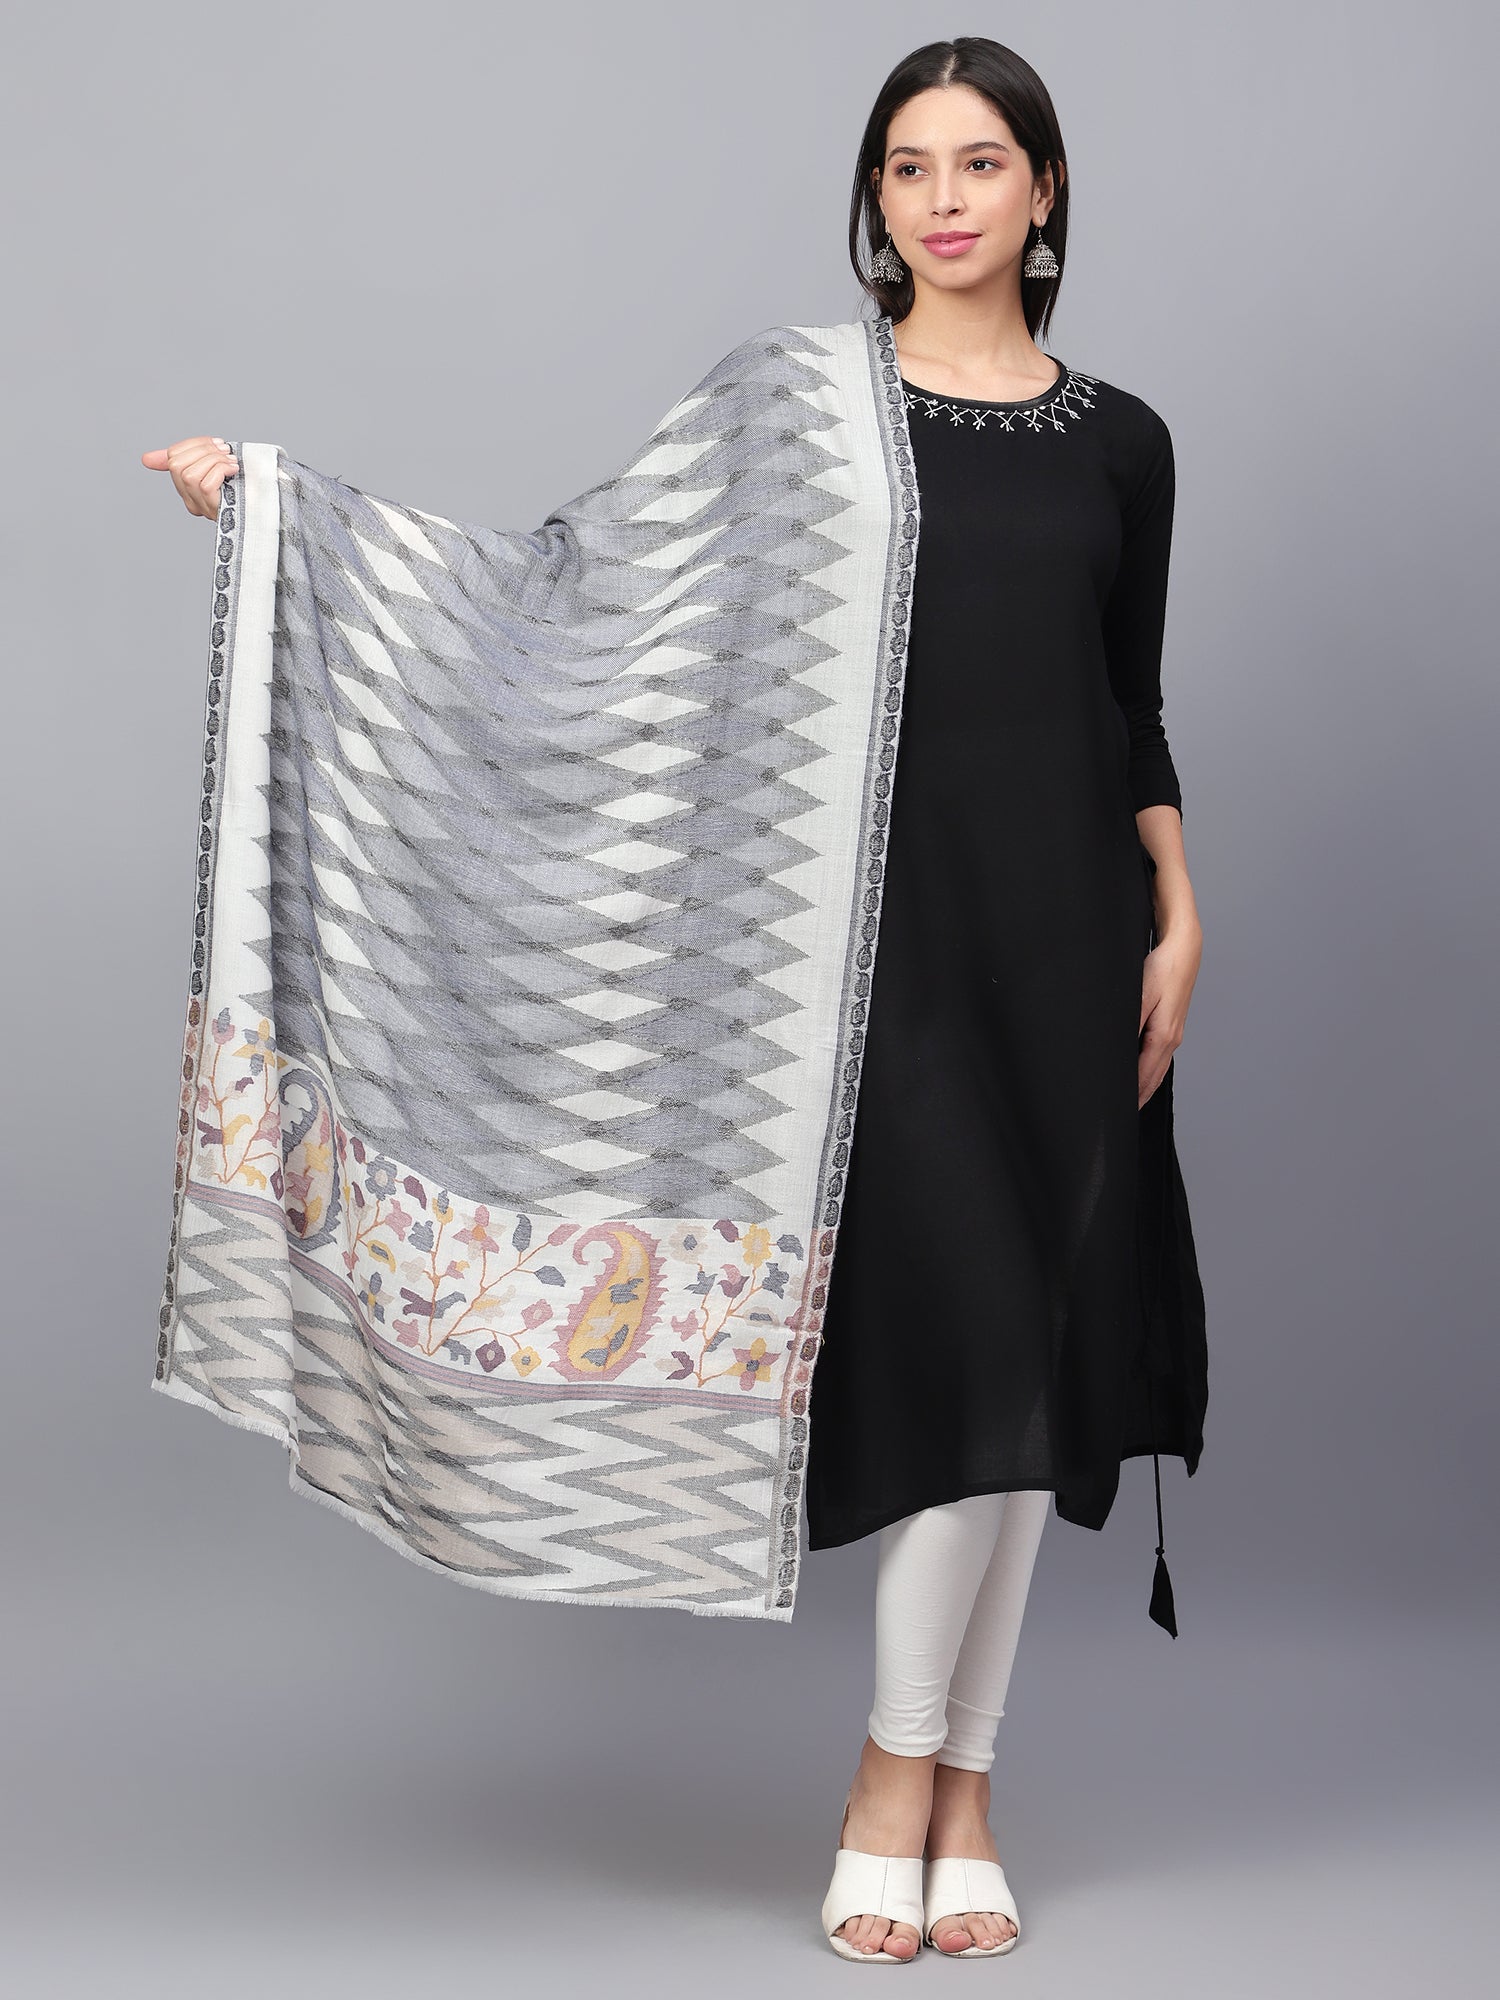 kani shawl, kani shawls of kashmir, kani shawl price